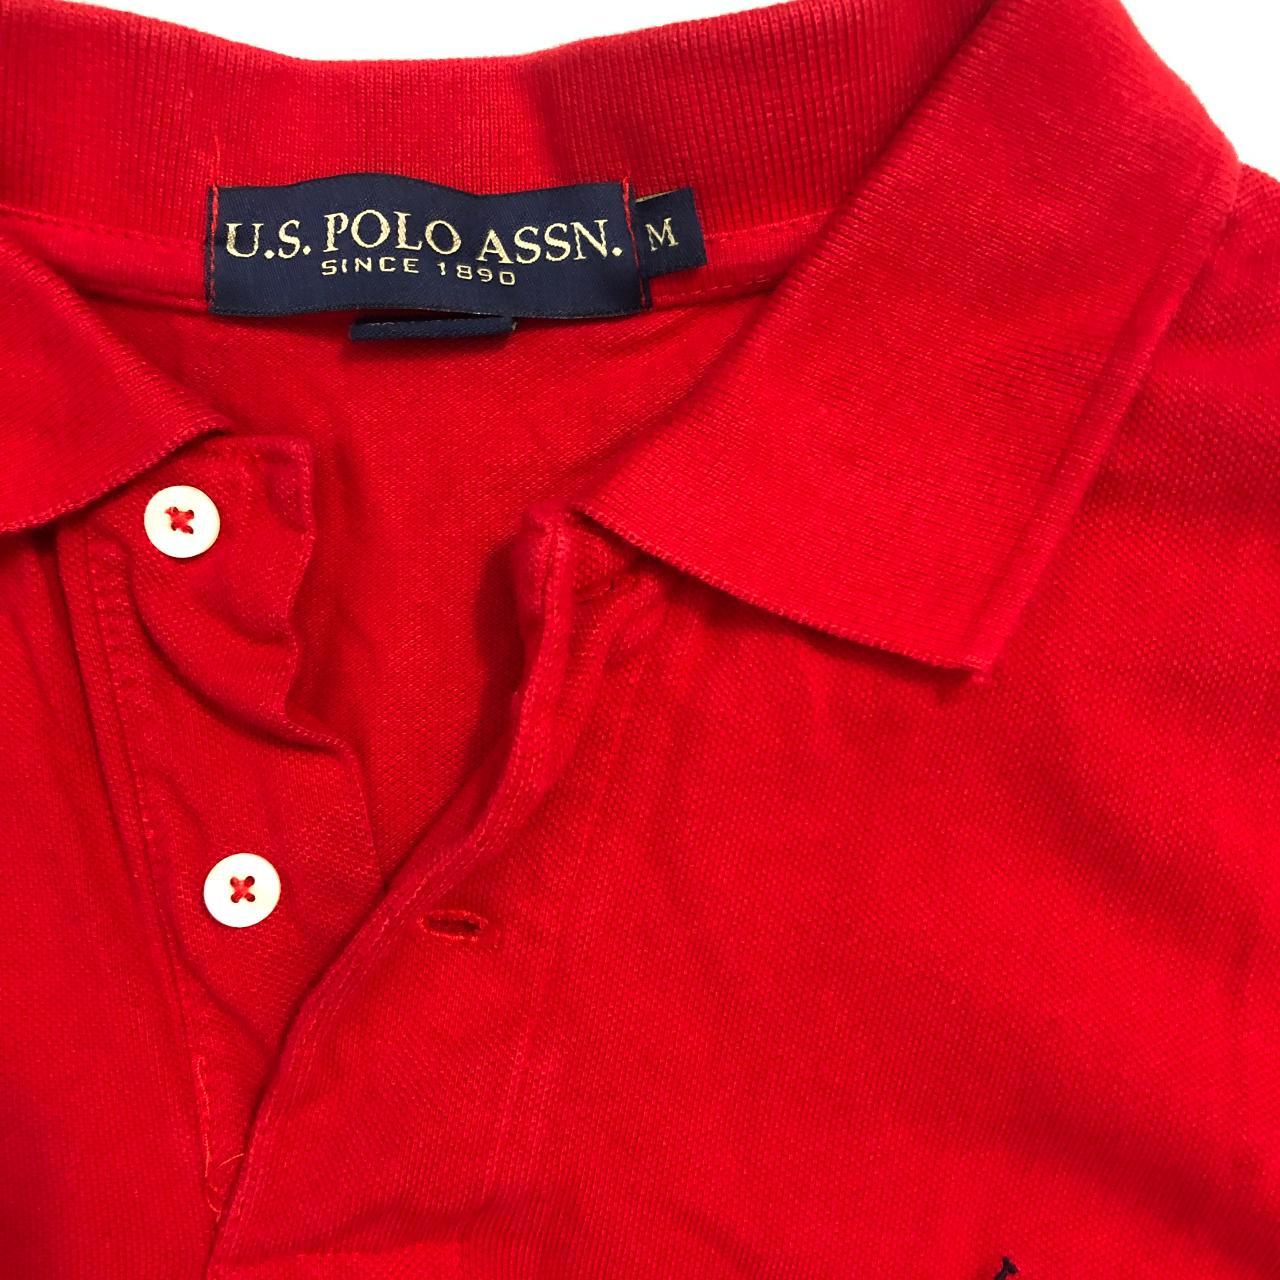 U.S. Polo Assn. Men's Red Polo-shirts (2)